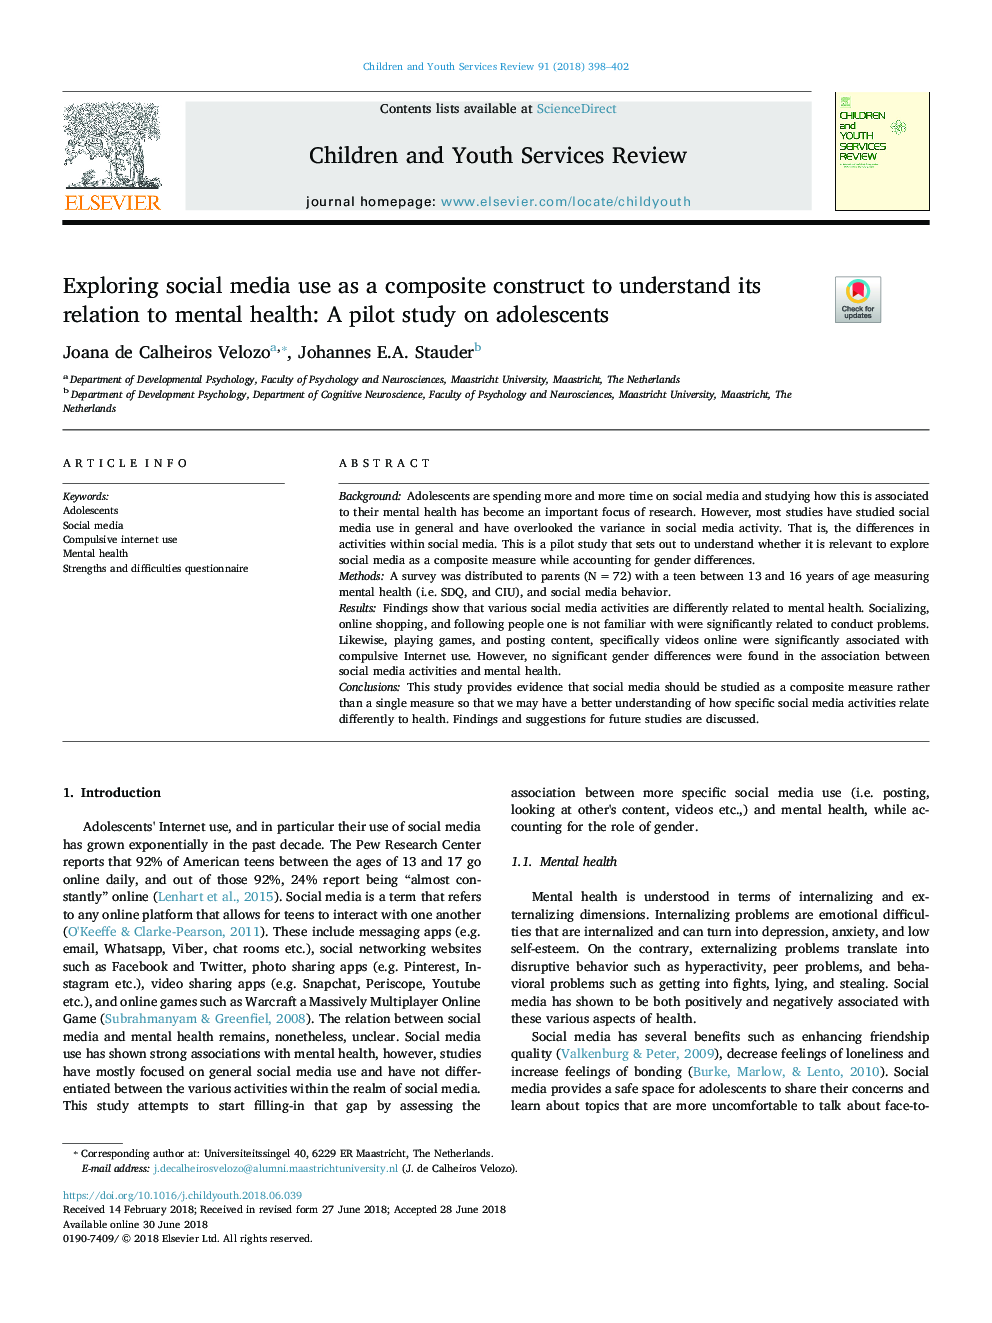 بررسی استفاده از رسانه های اجتماعی به عنوان یک ساختار کامپوزیت برای درک رابطه آن با سلامت روان: یک مطالعه آزمایشی در مورد نوجوانان 